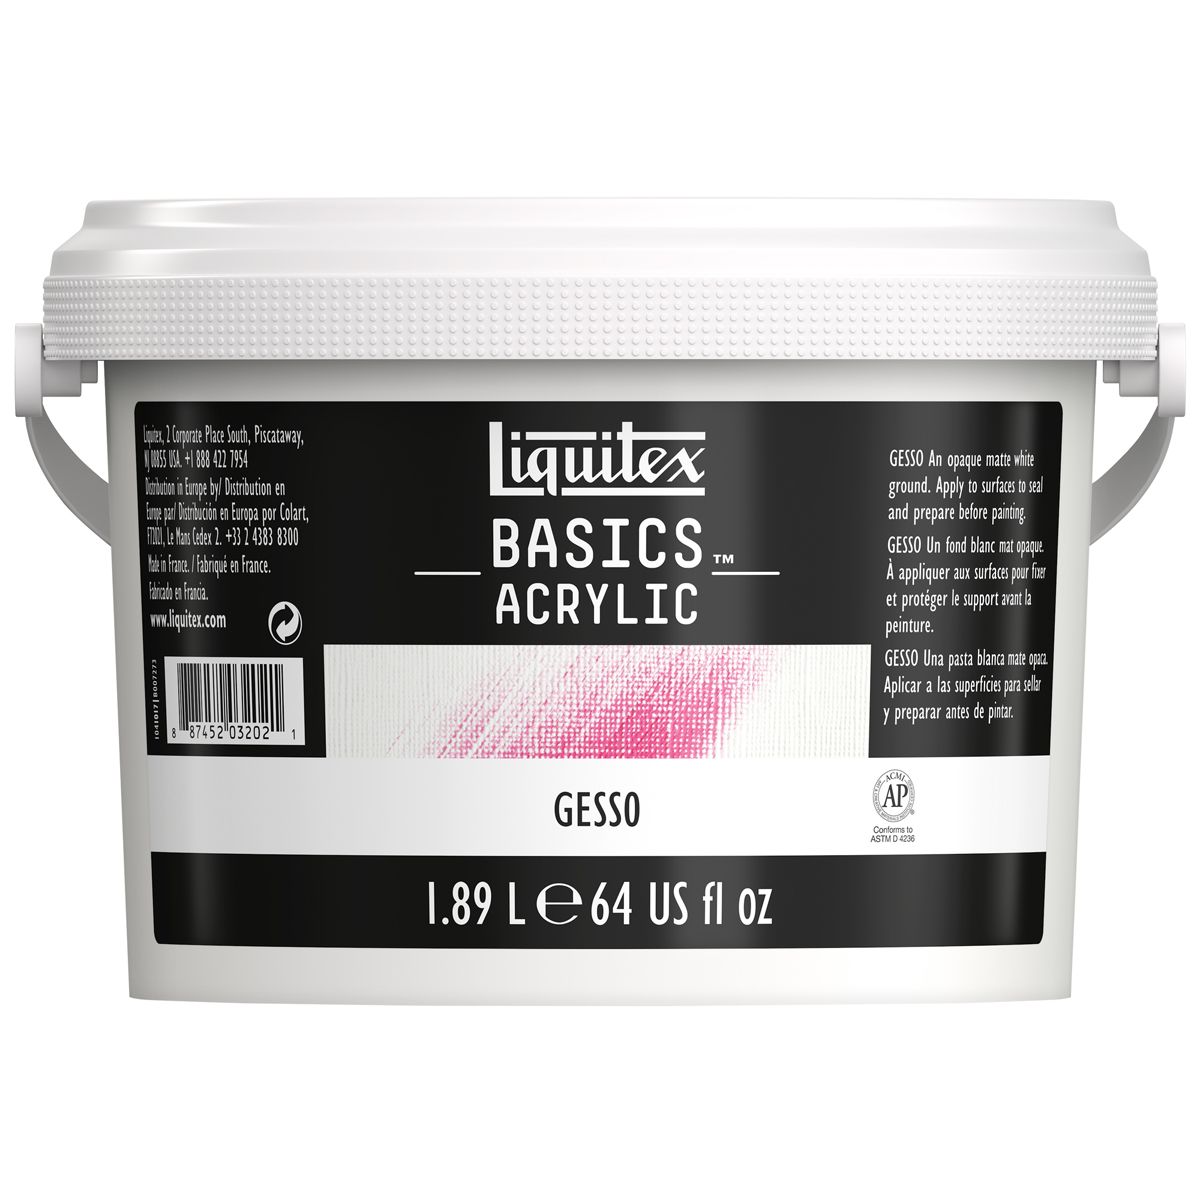 Liquitex Basics Acrylic Gesso - 1.89 L (64oz)